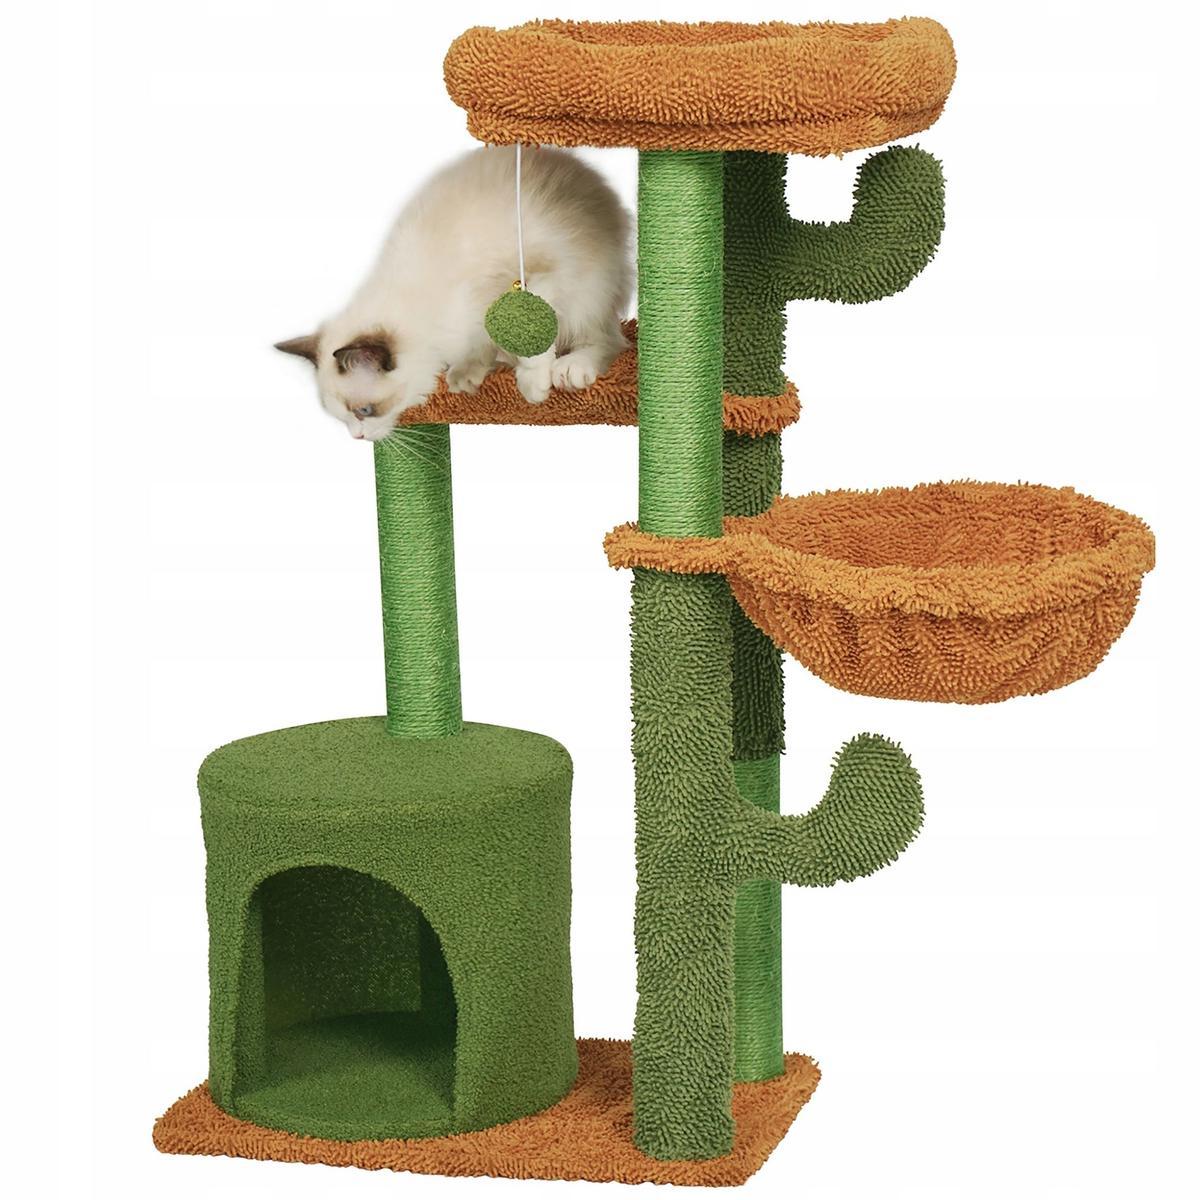 Drapak dla kota 47x90 cm zielono brązowy wieża legowisko zabawka dla zwierząt  nr. 6